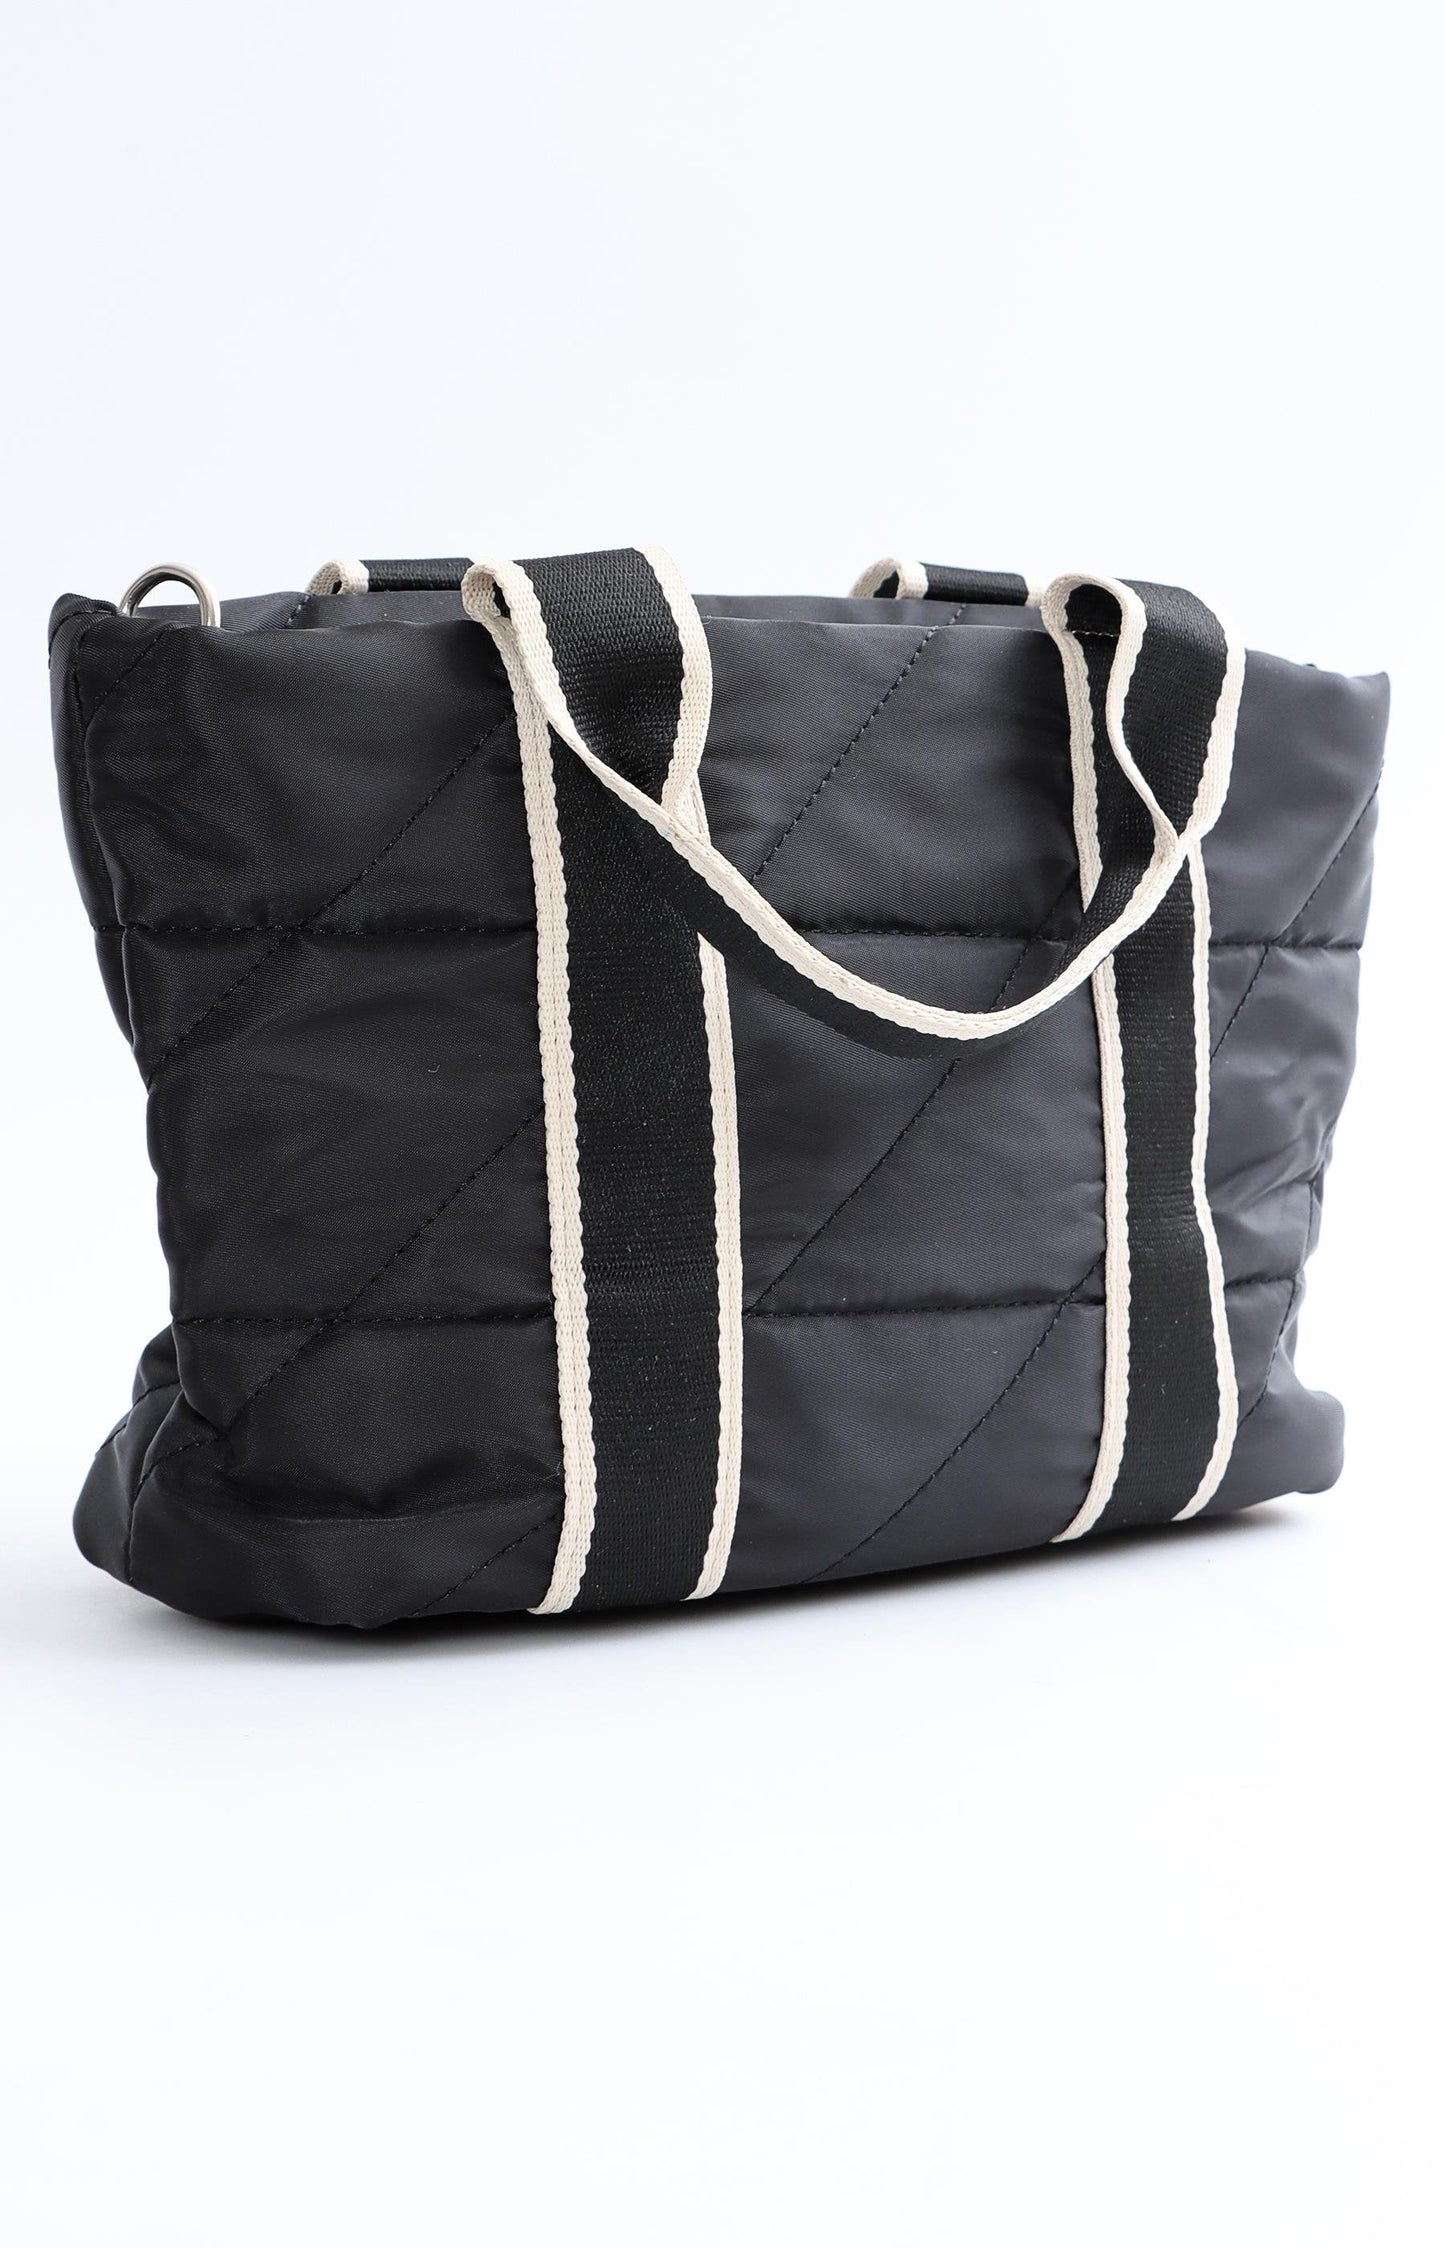 Ladies Quilted Mini Shopper Bag - Black